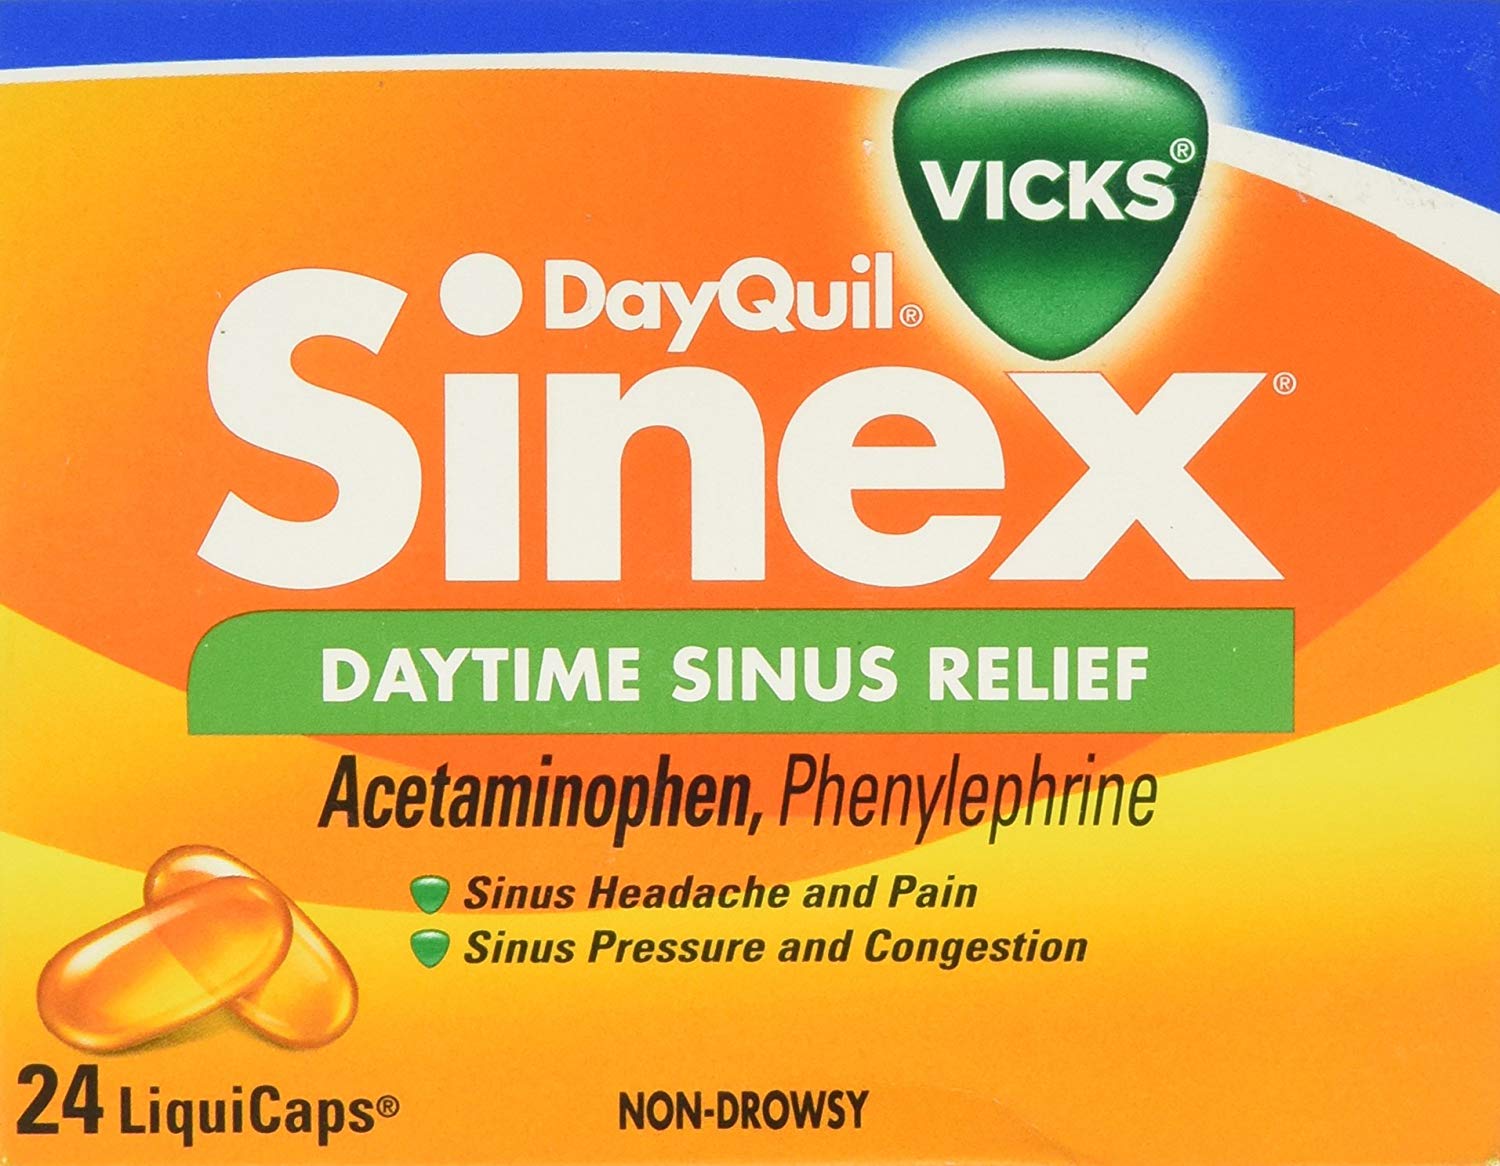 Dayquil Logo - Vicks Dayquil Sinex Daytime Sinus Relief Liquicaps 24